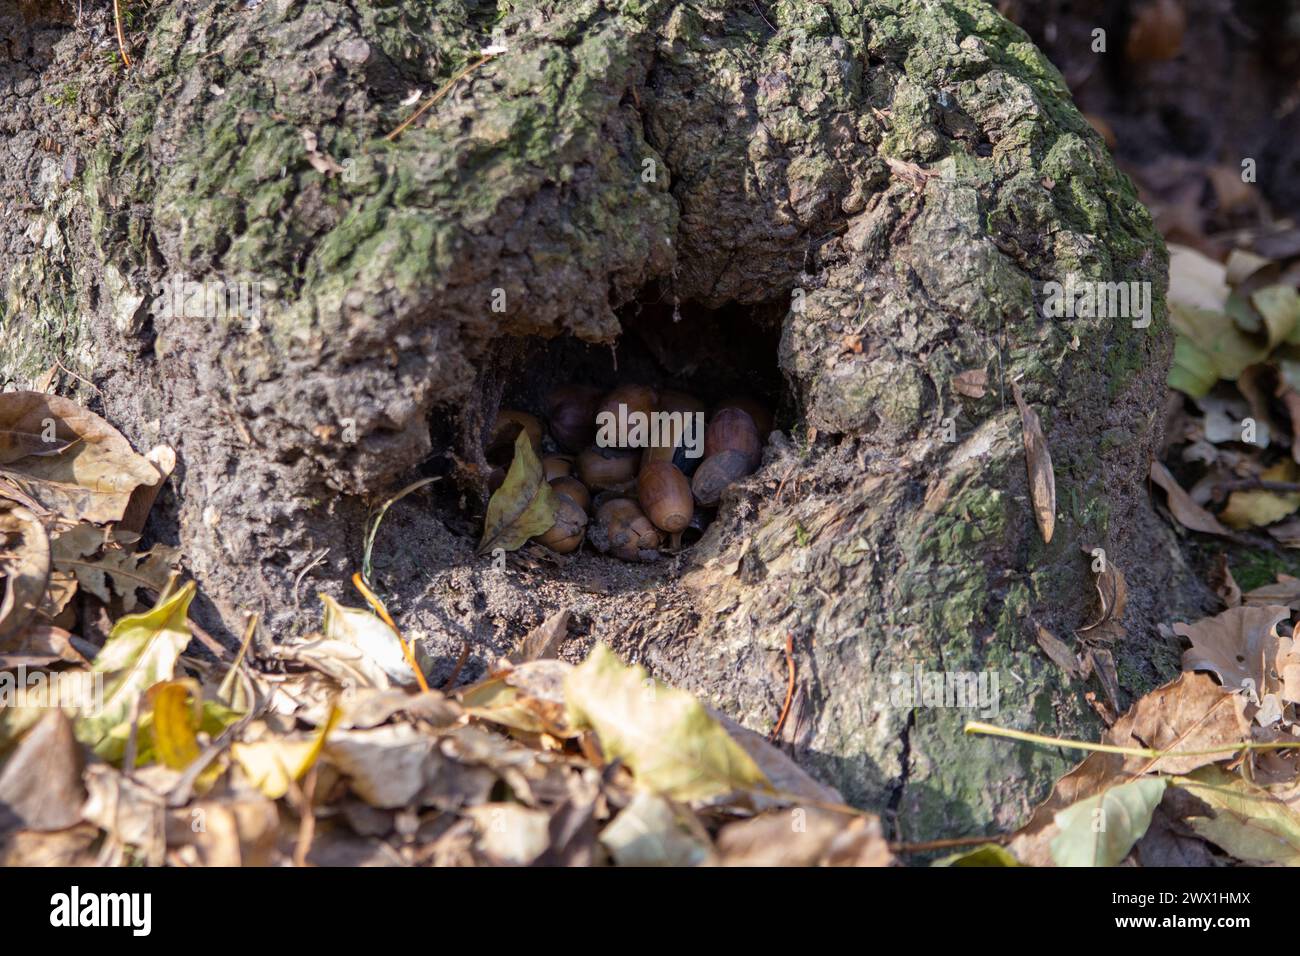 dans l'arbre, l'écureuil creux ramassait des glands pour l'hiver Banque D'Images